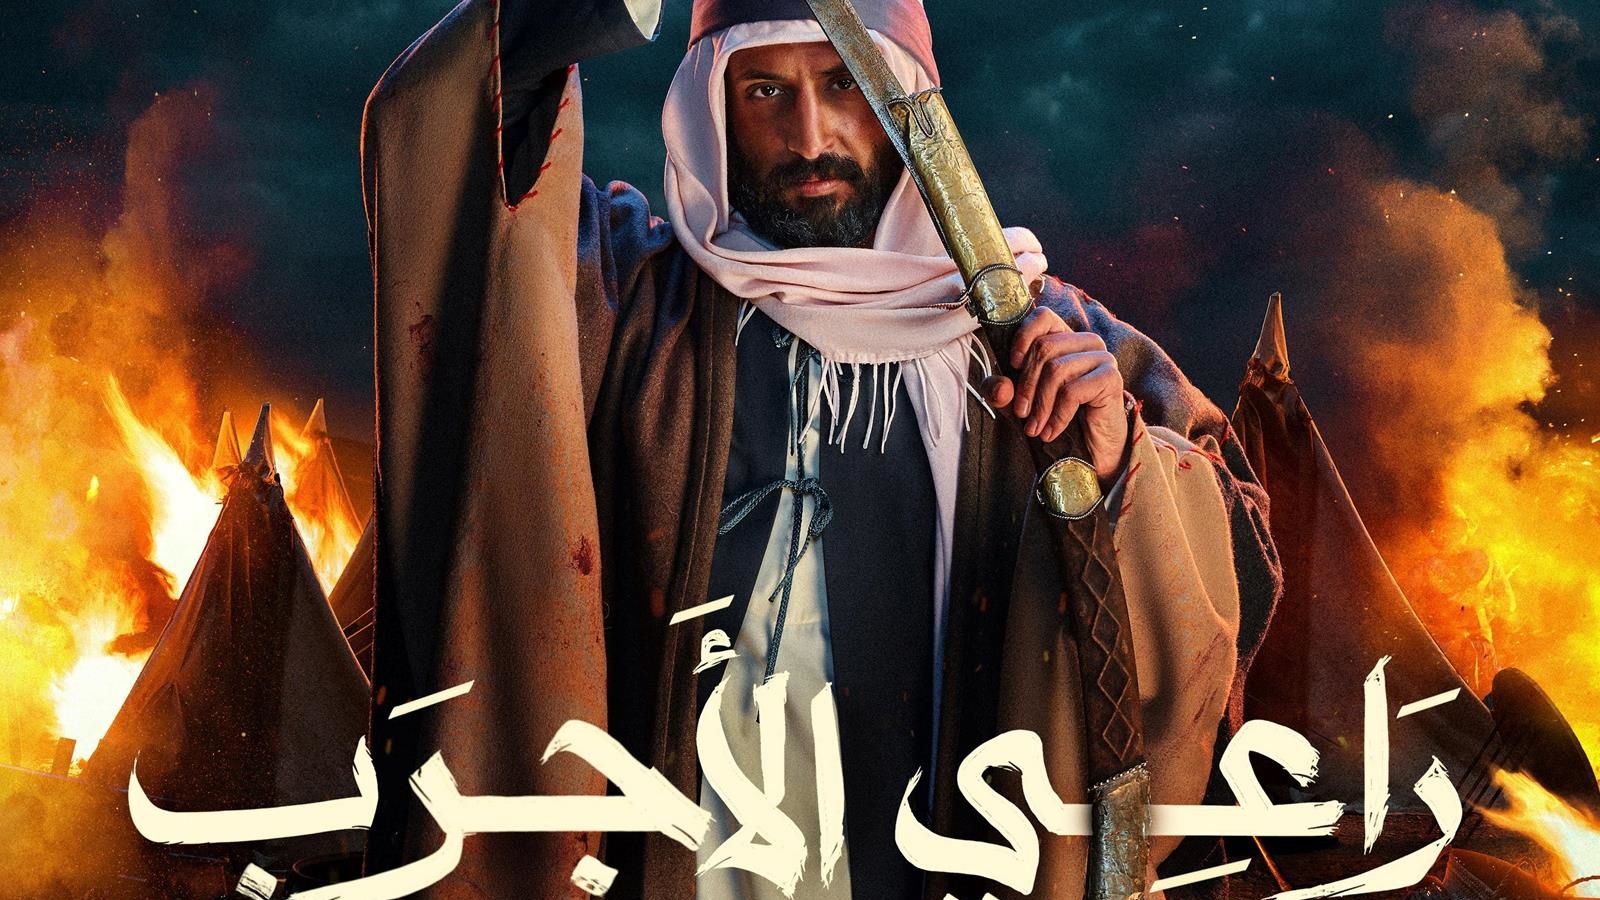 فيلم راعي الأجرب يوثق البطولات والقصص التاريخية بالسعودية